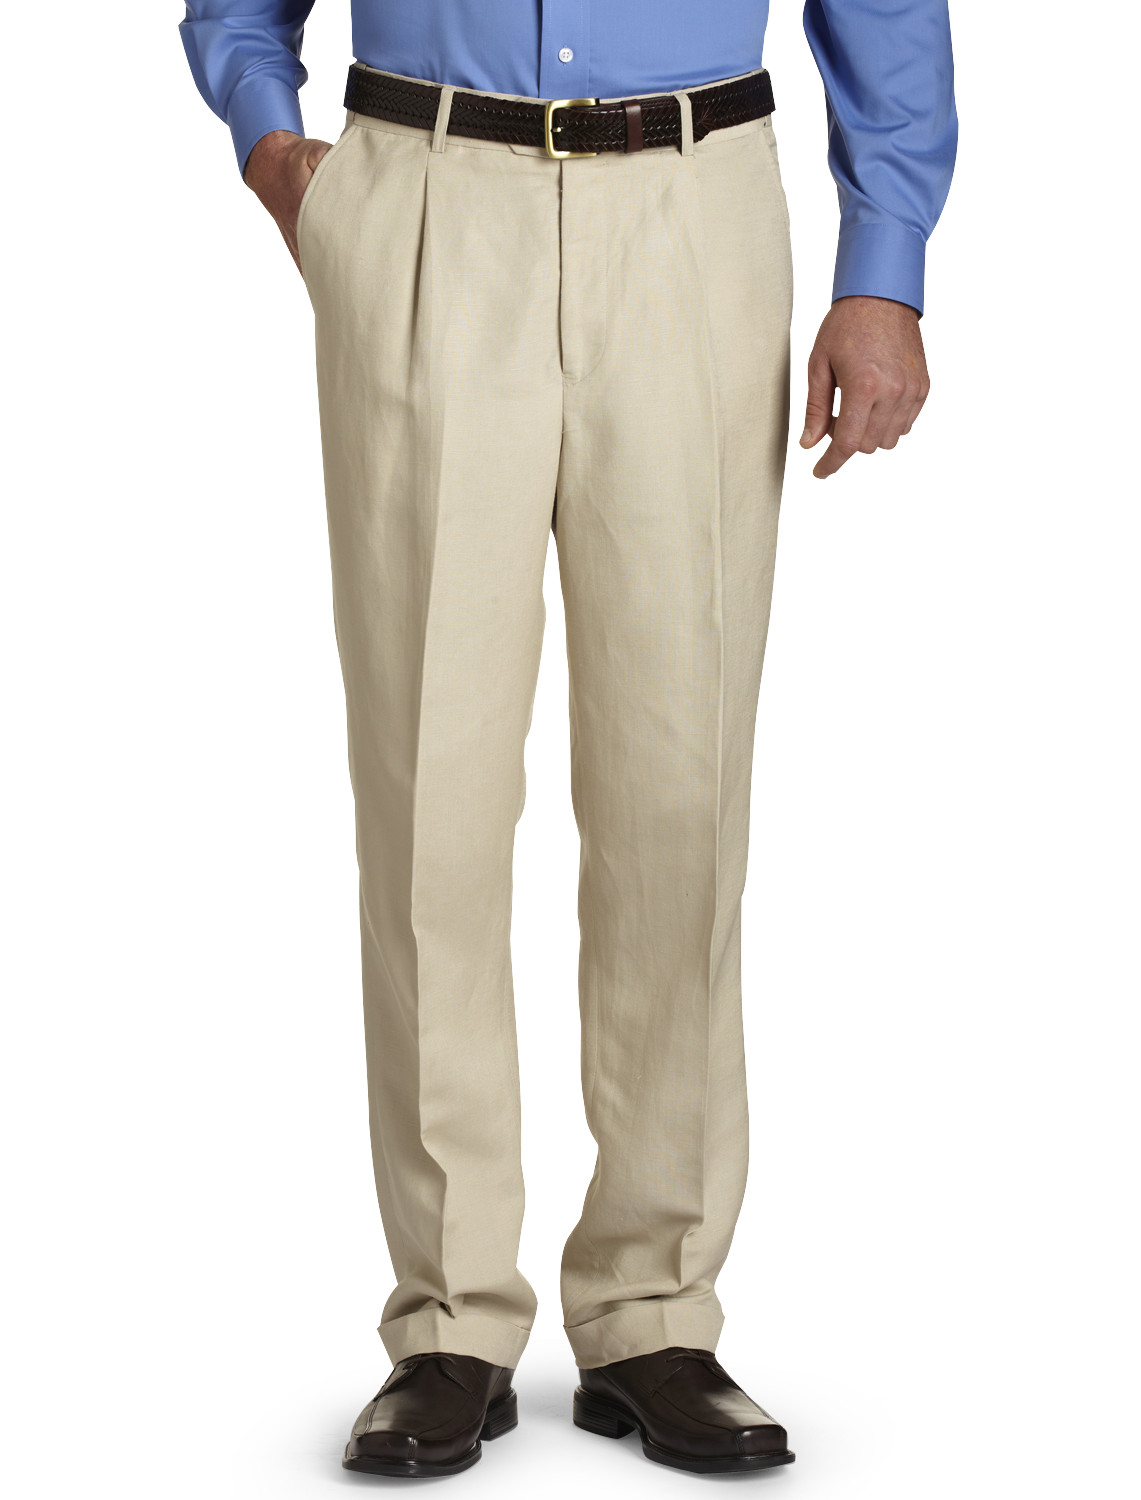 Oak Hill Waist Relaxer Pleated Linen Suit Pants Casual Male XL | eBay